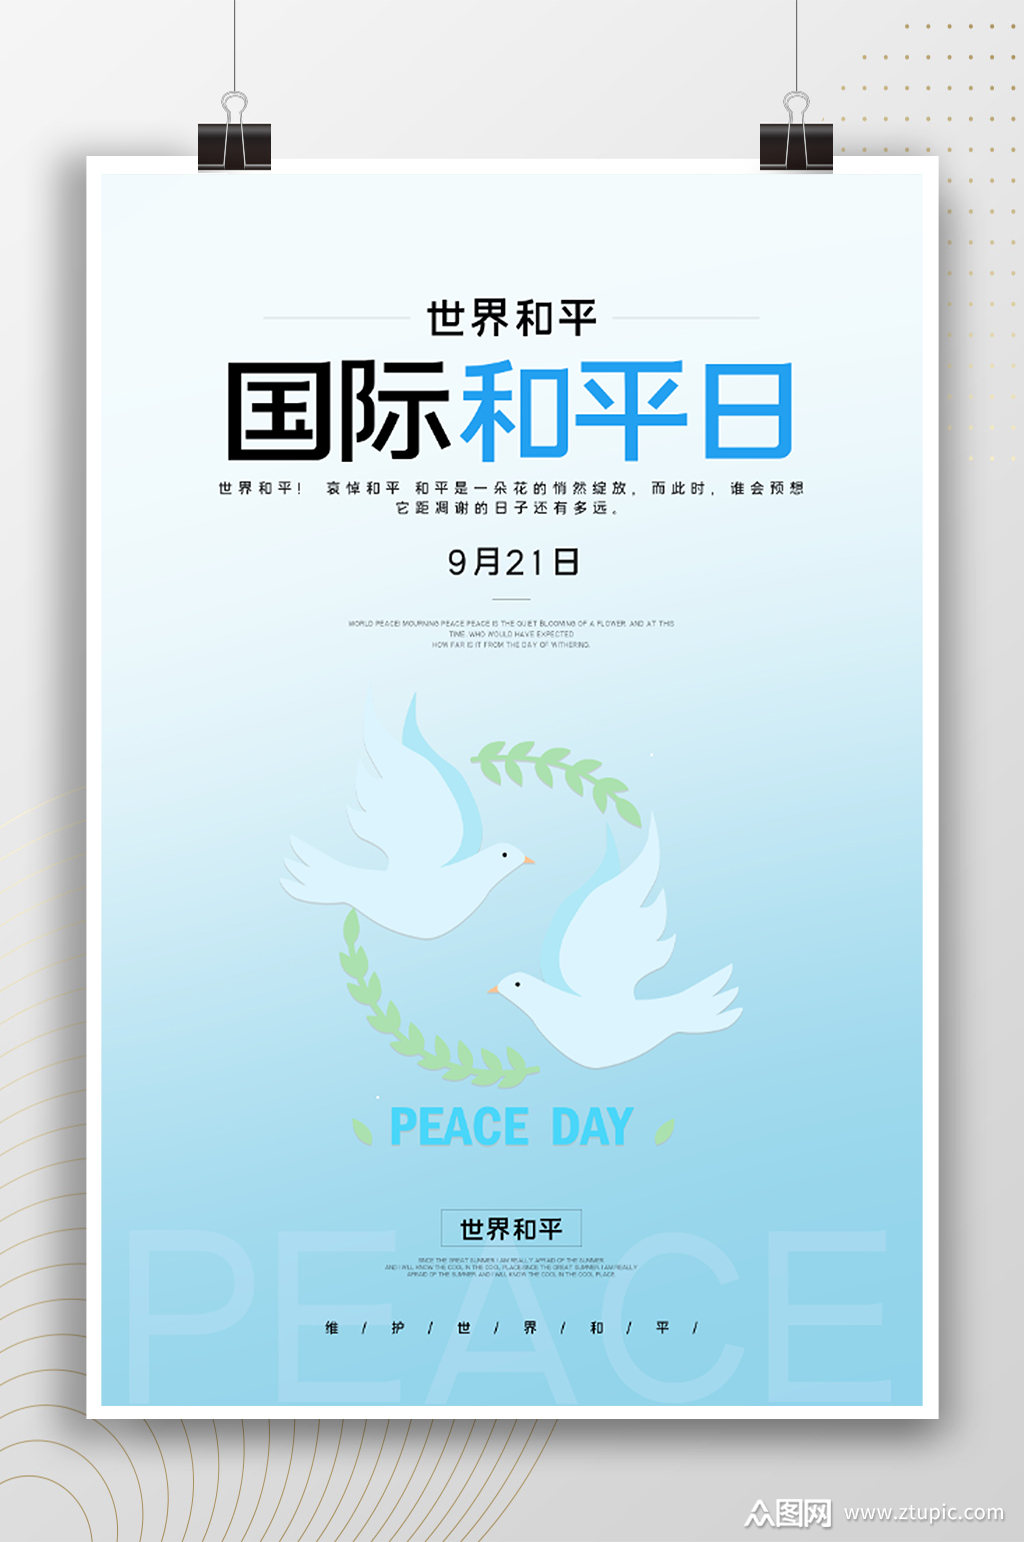 热爱和平国际和平日公益海报